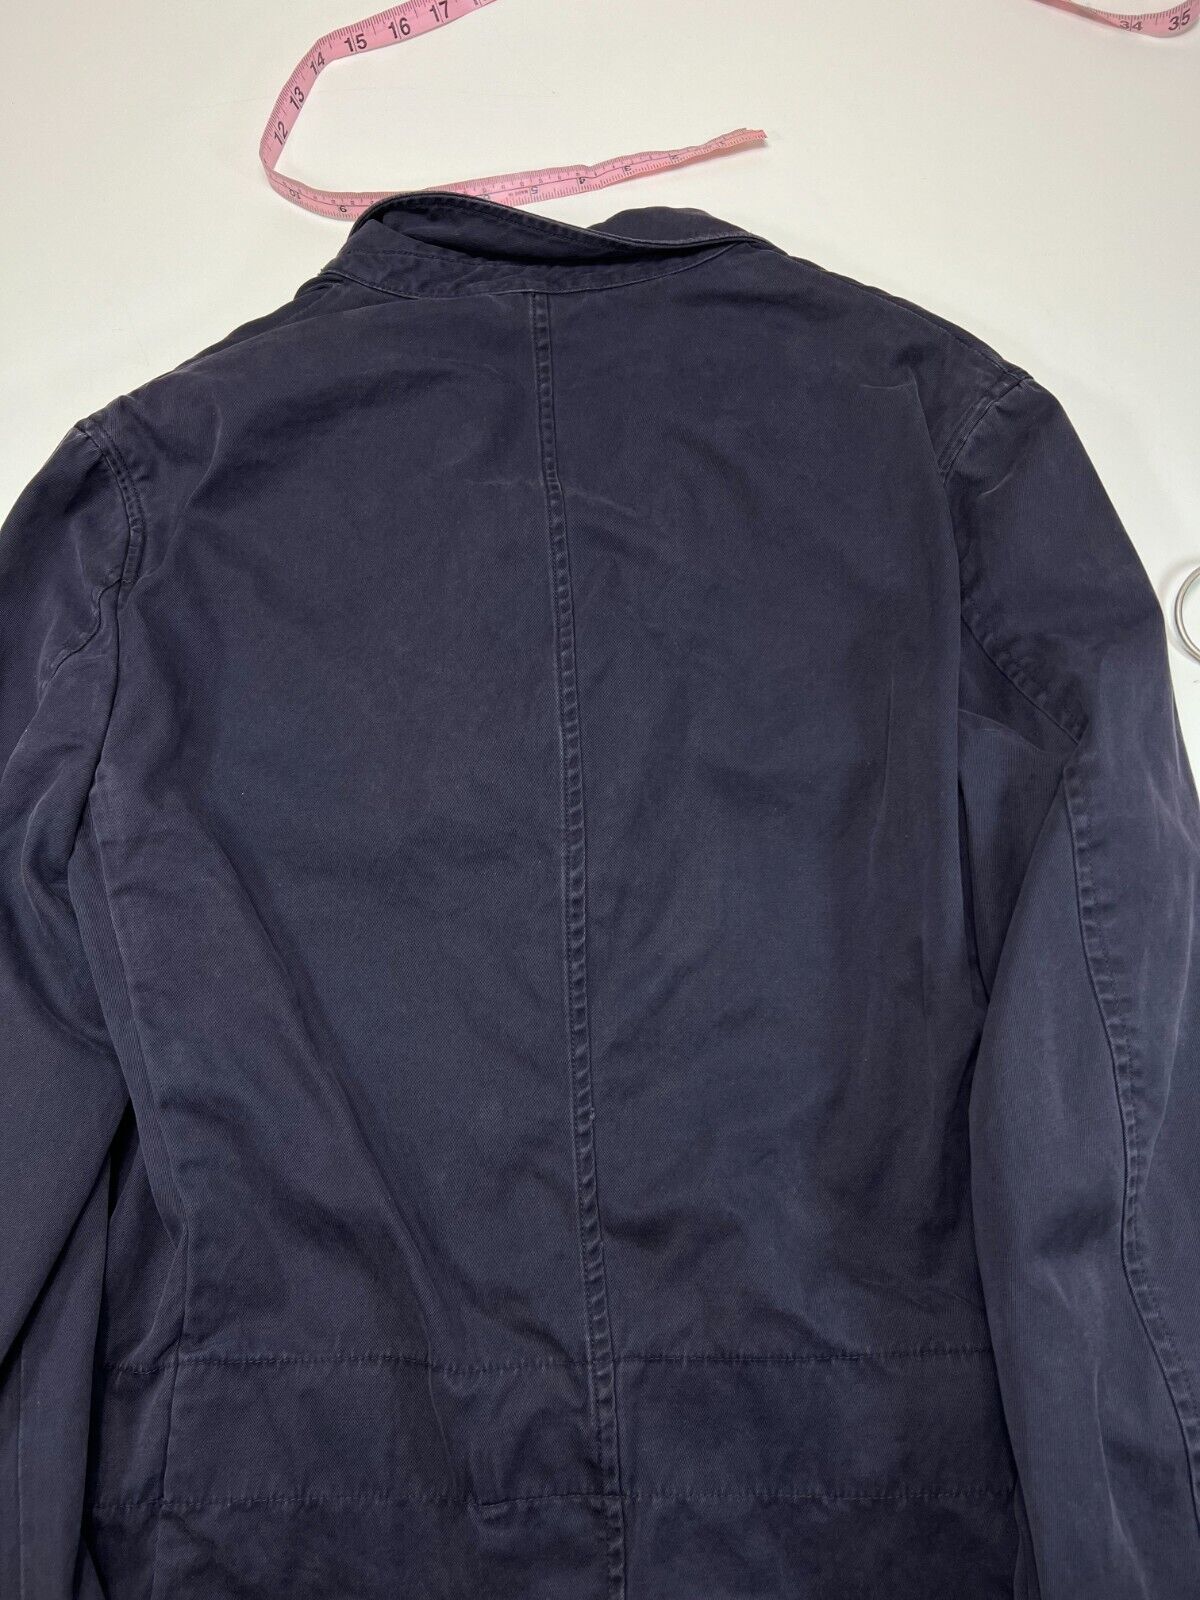 Polo Ralph Lauren Yatcht Club Tropical Crest Blazer Jacket Size Medium 40R